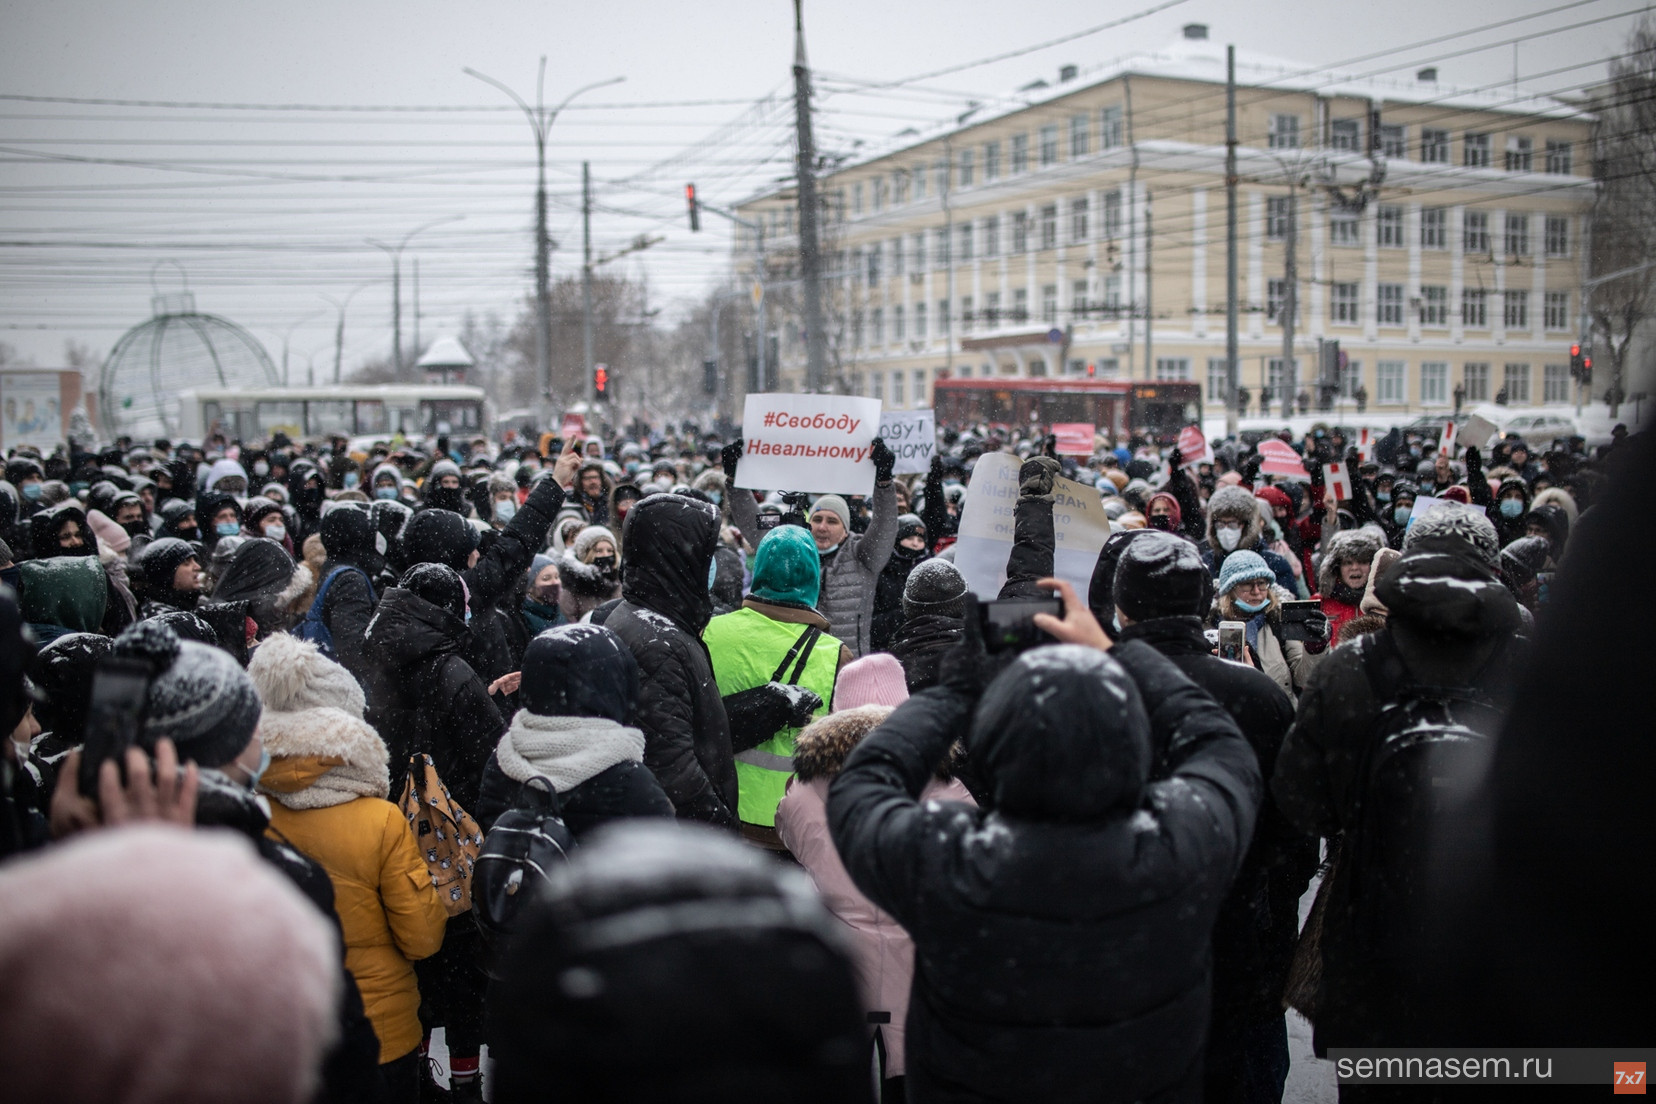 Как акции в поддержку Навального повлияли на власть и общество. Комментарий эксперта к годовщине протеста